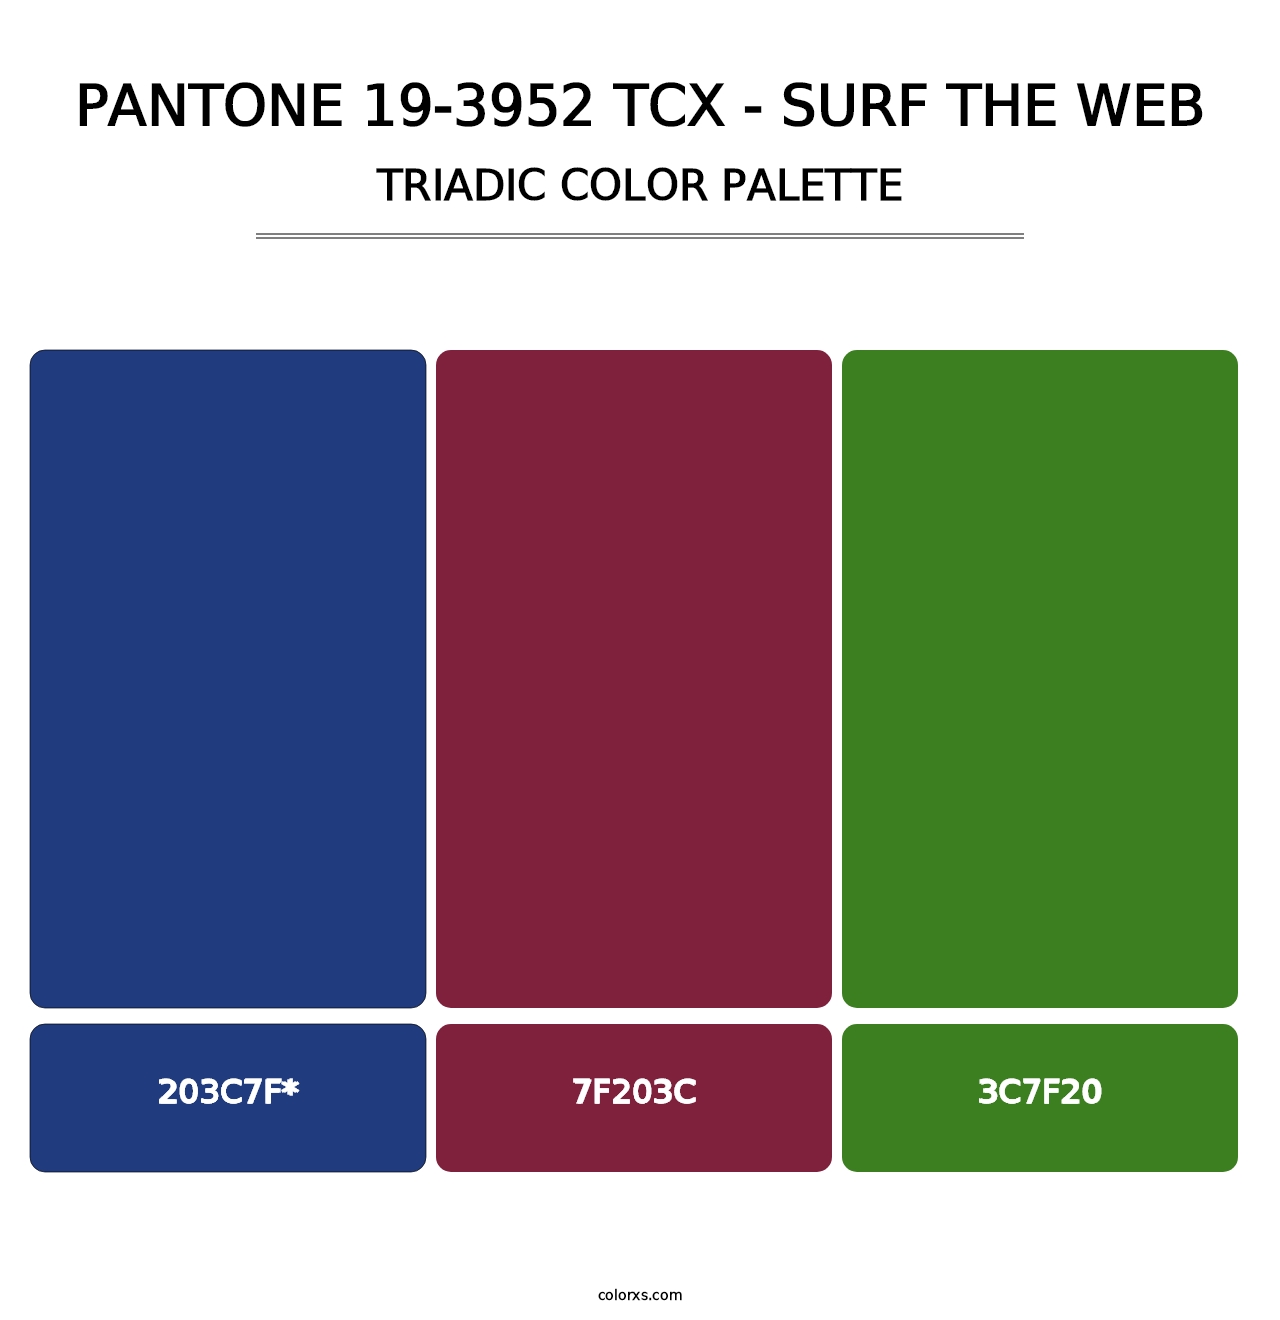 PANTONE 19-3952 TCX - Surf the Web - Triadic Color Palette